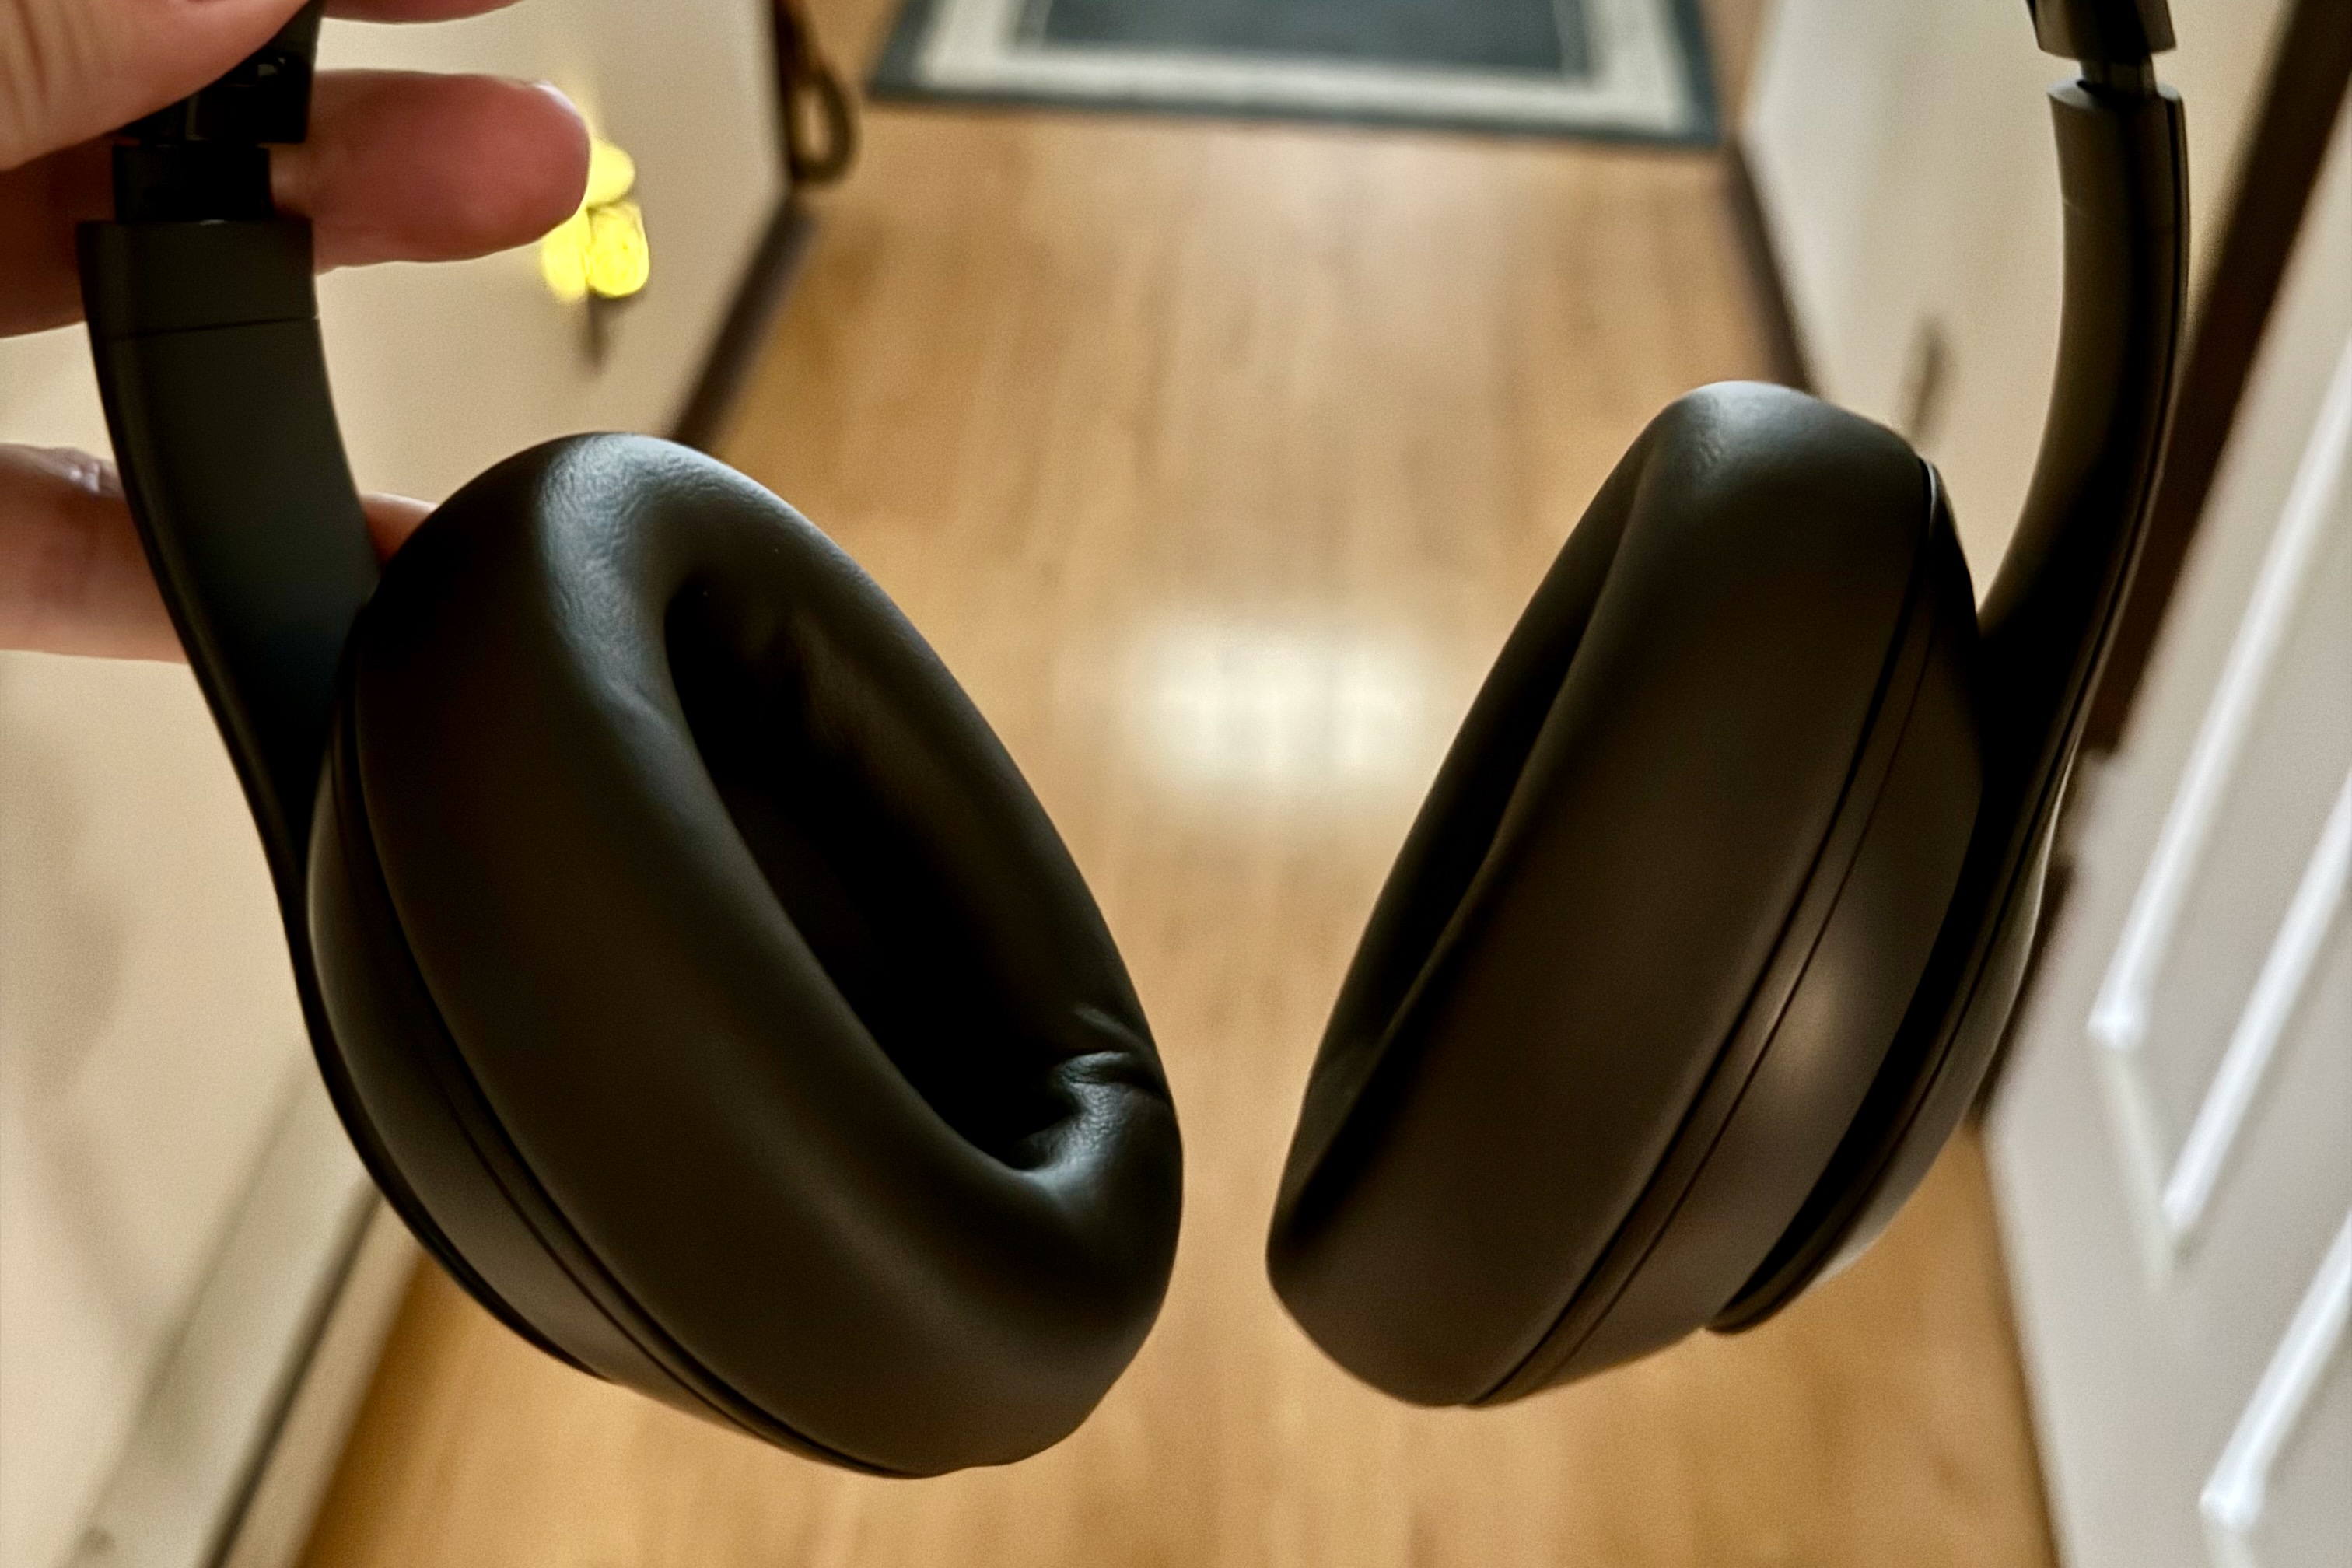 A pair of Beats Studio Pro headphones in Dark Brown.